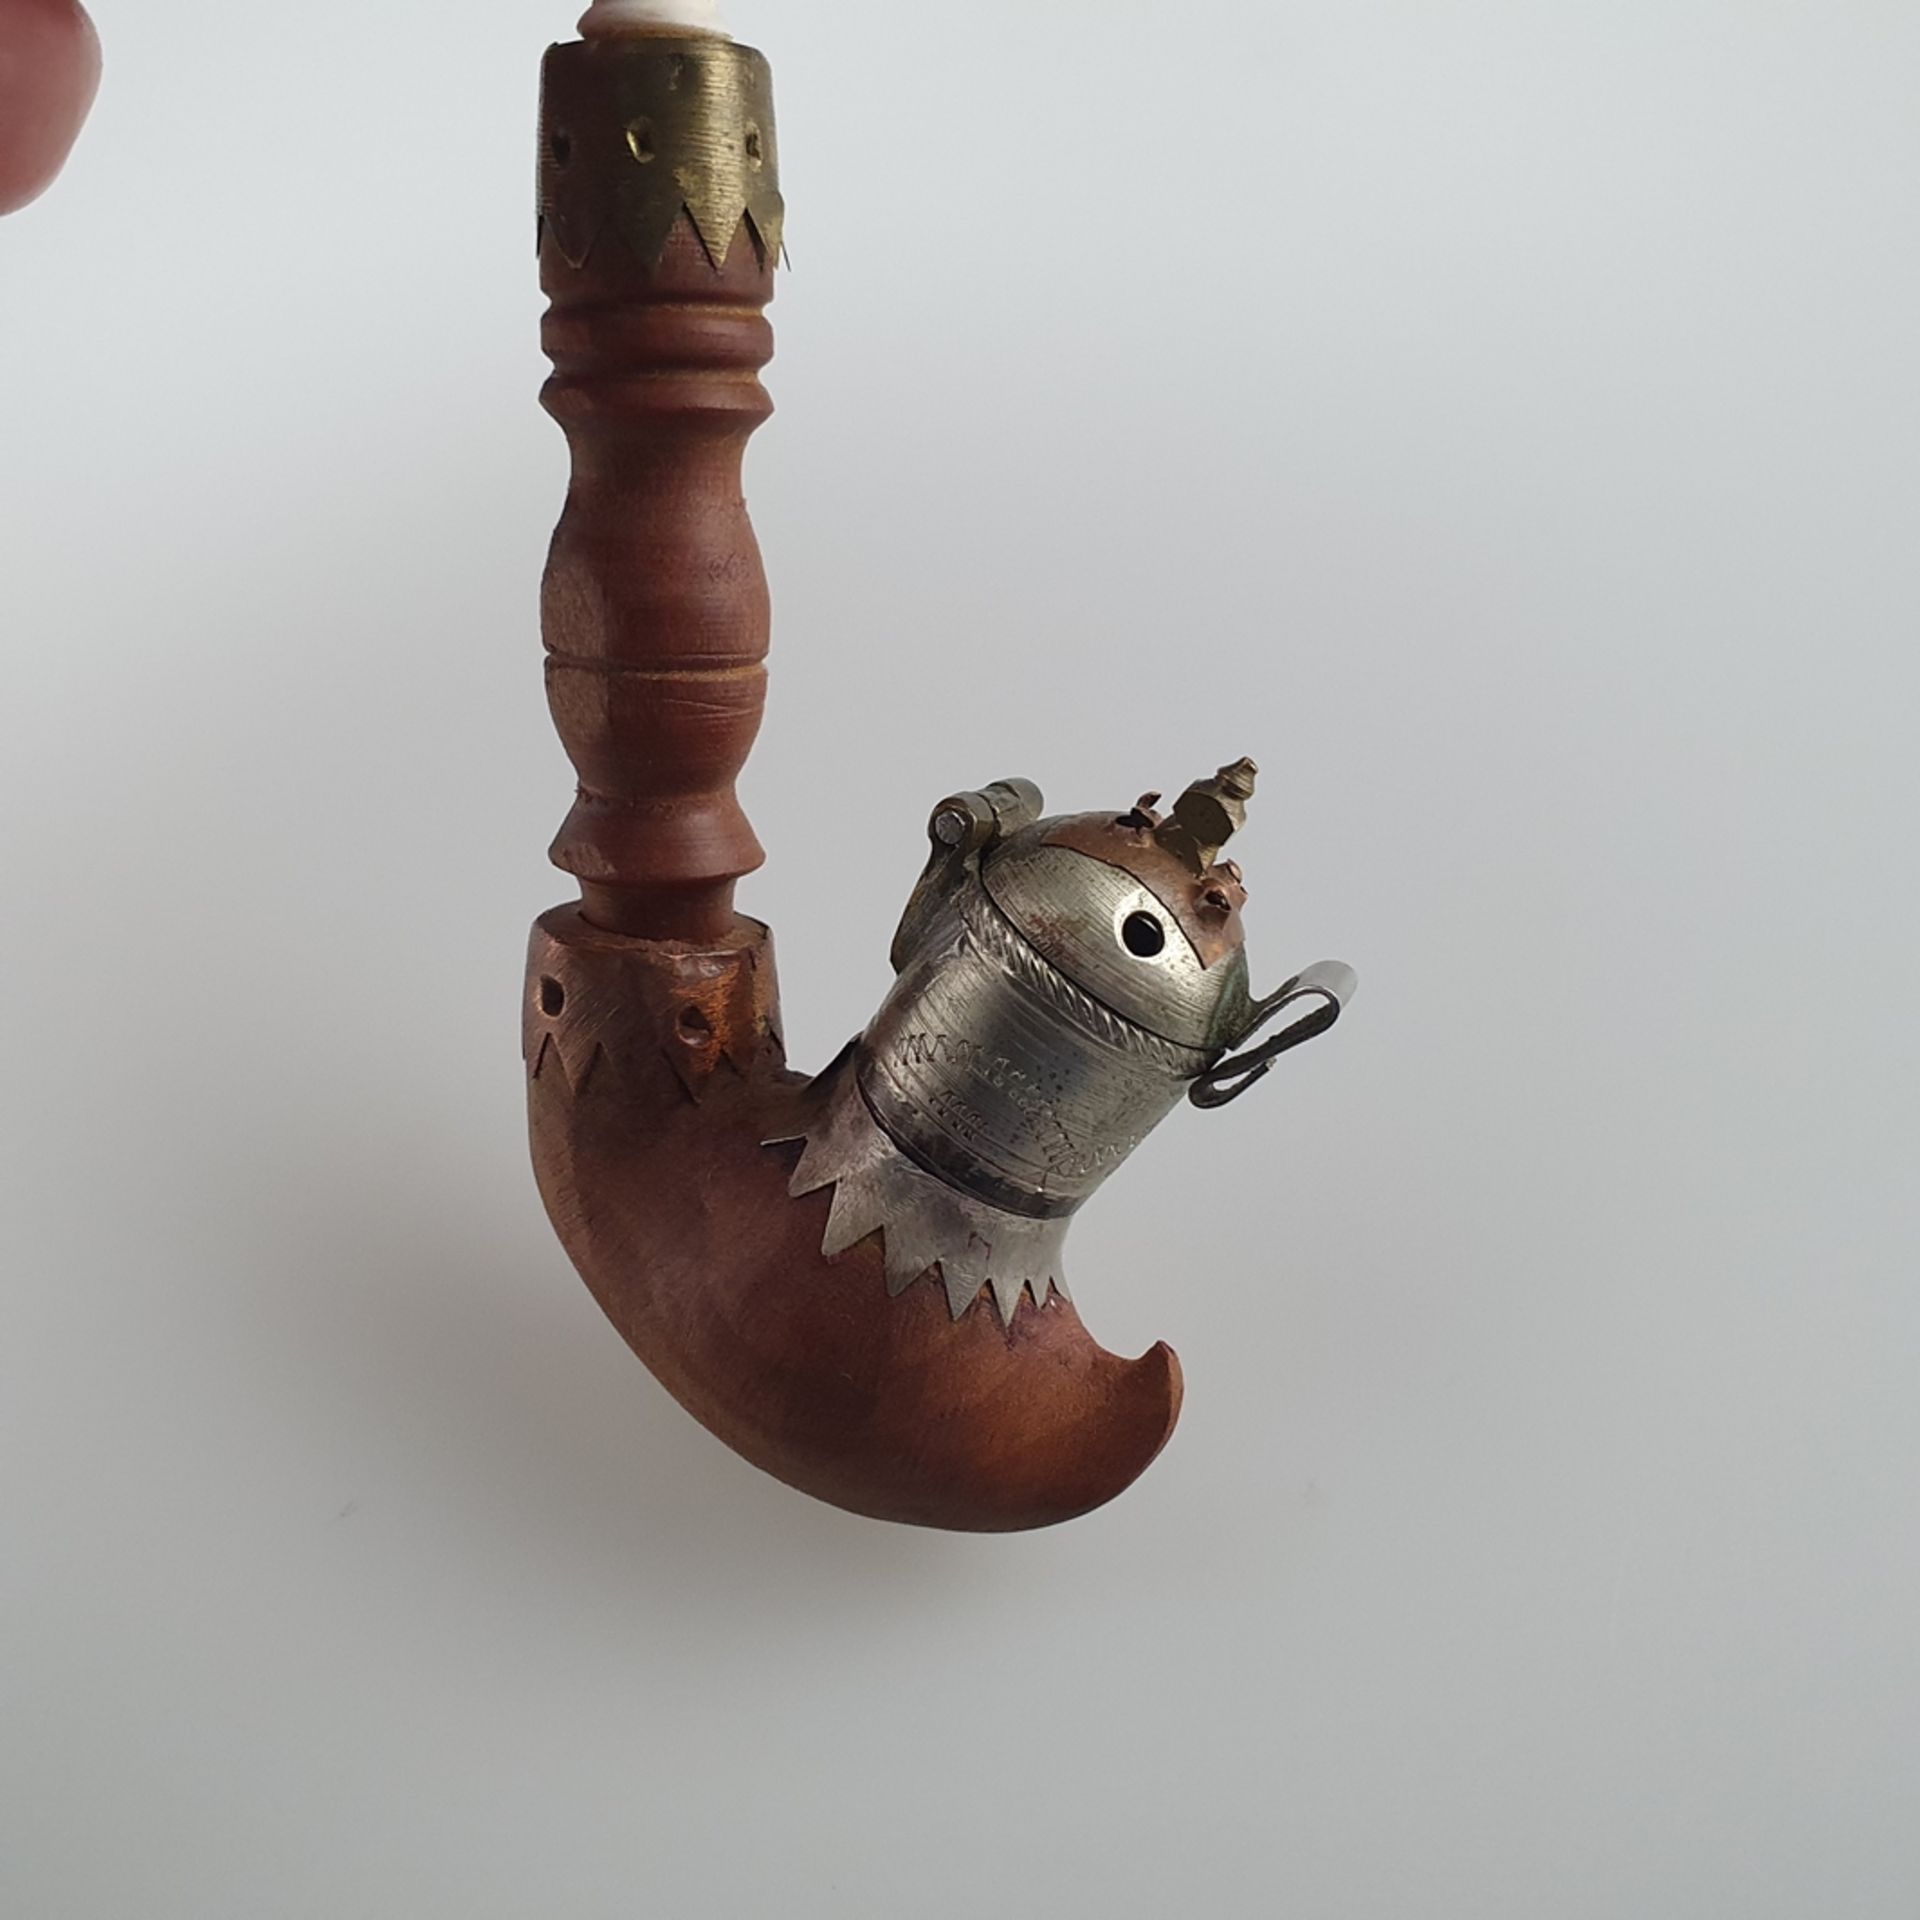 Opiumpfeife - Holz, gedrechselt, Metallmontur, Beinmundstück, leichte Alters- bzw. Gebrauchsspuren, - Image 4 of 8